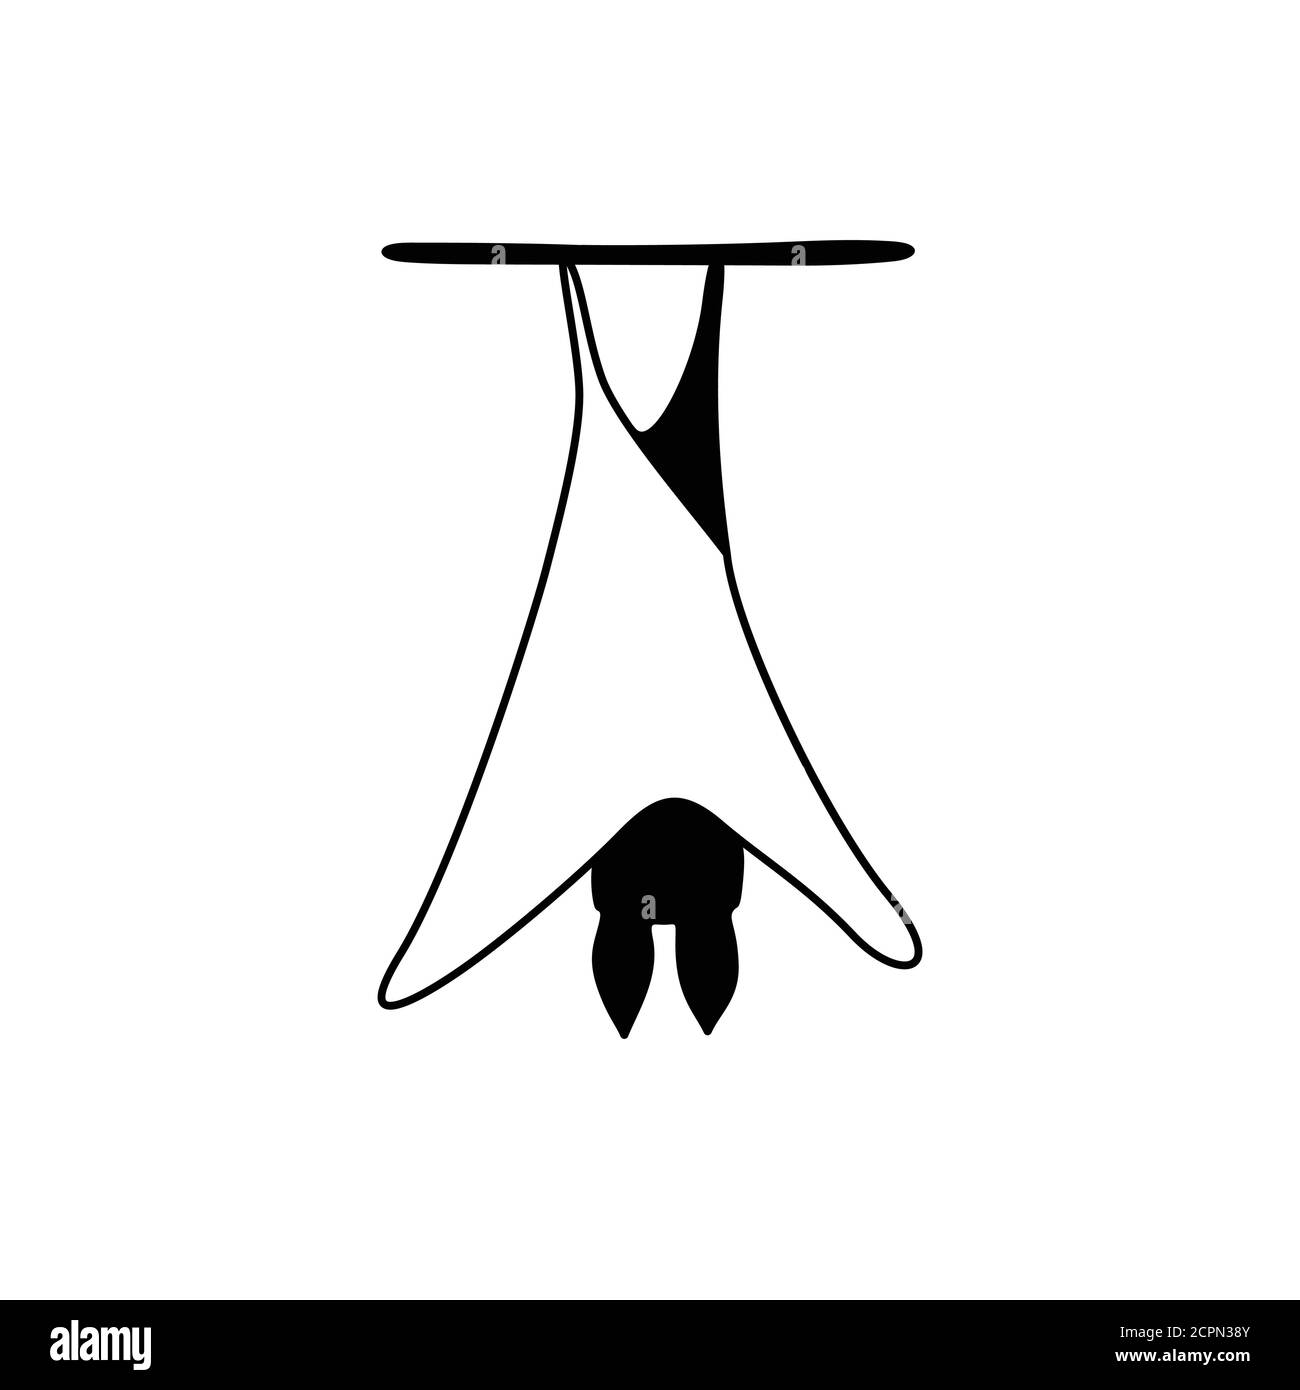 illustration vectorielle de la chauve-souris de nuit de dessin animé. Chauve-souris simple et drôle en noir et blanc Illustration de Vecteur